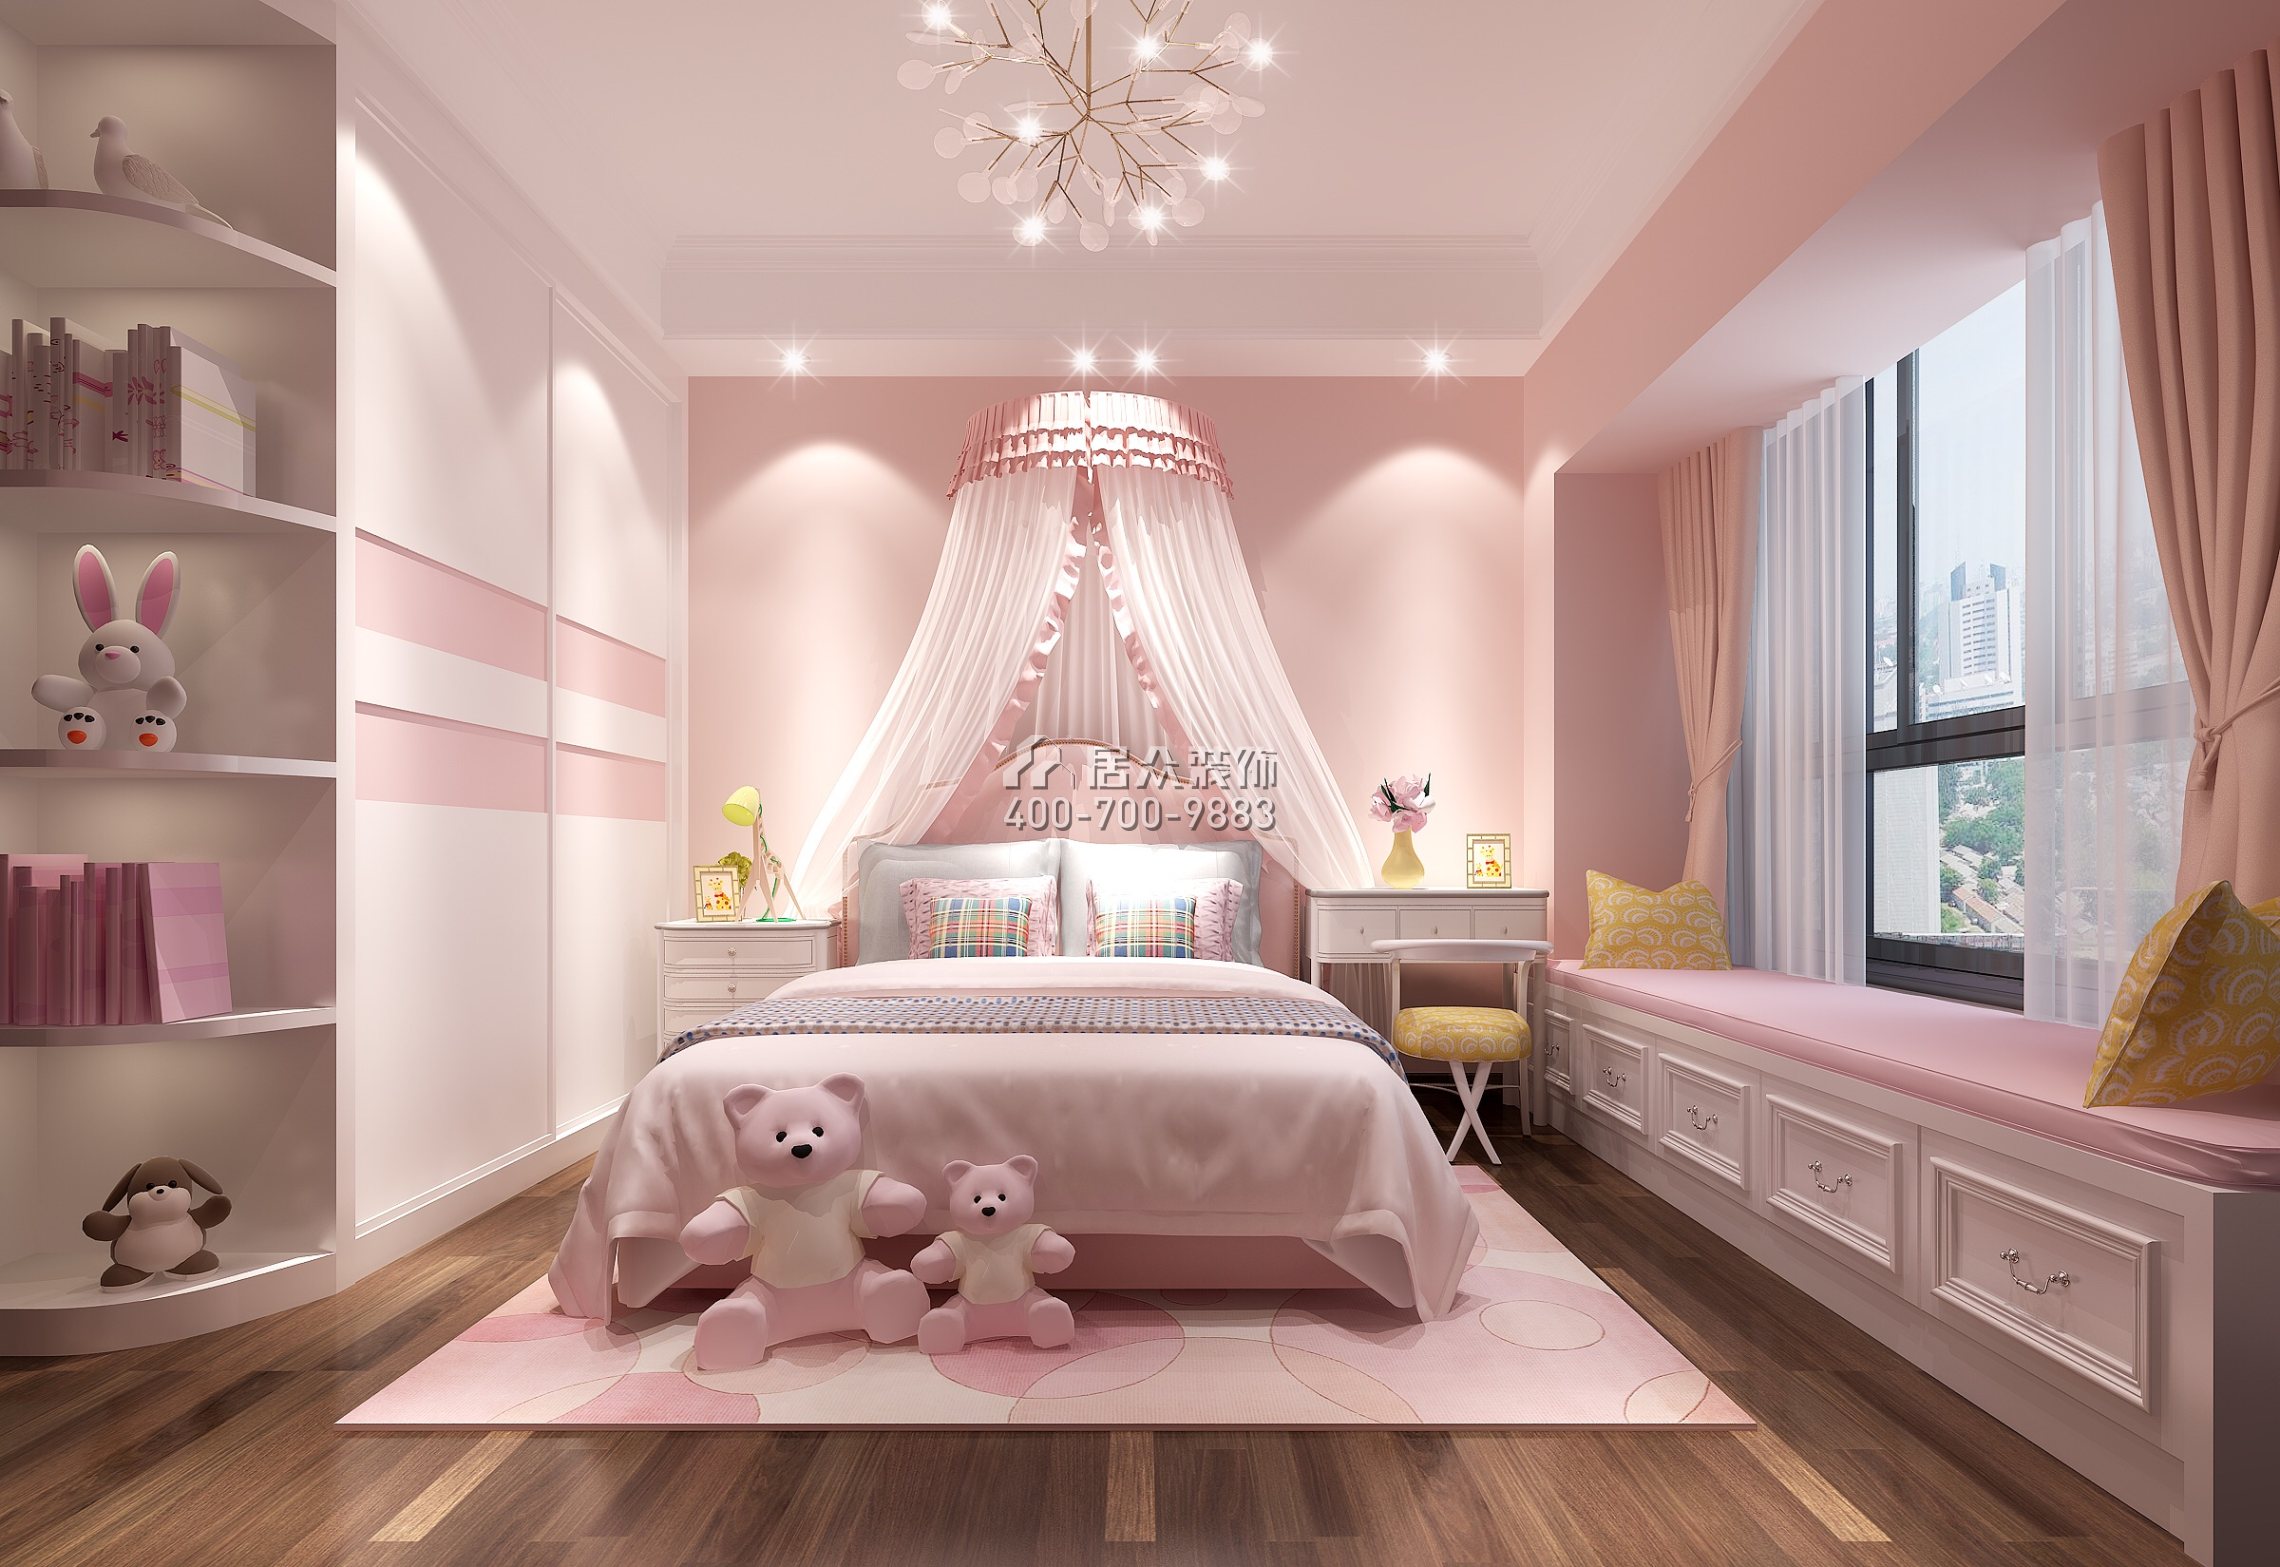 星河丹堤180平方米歐式風格平層戶型臥室裝修效果圖